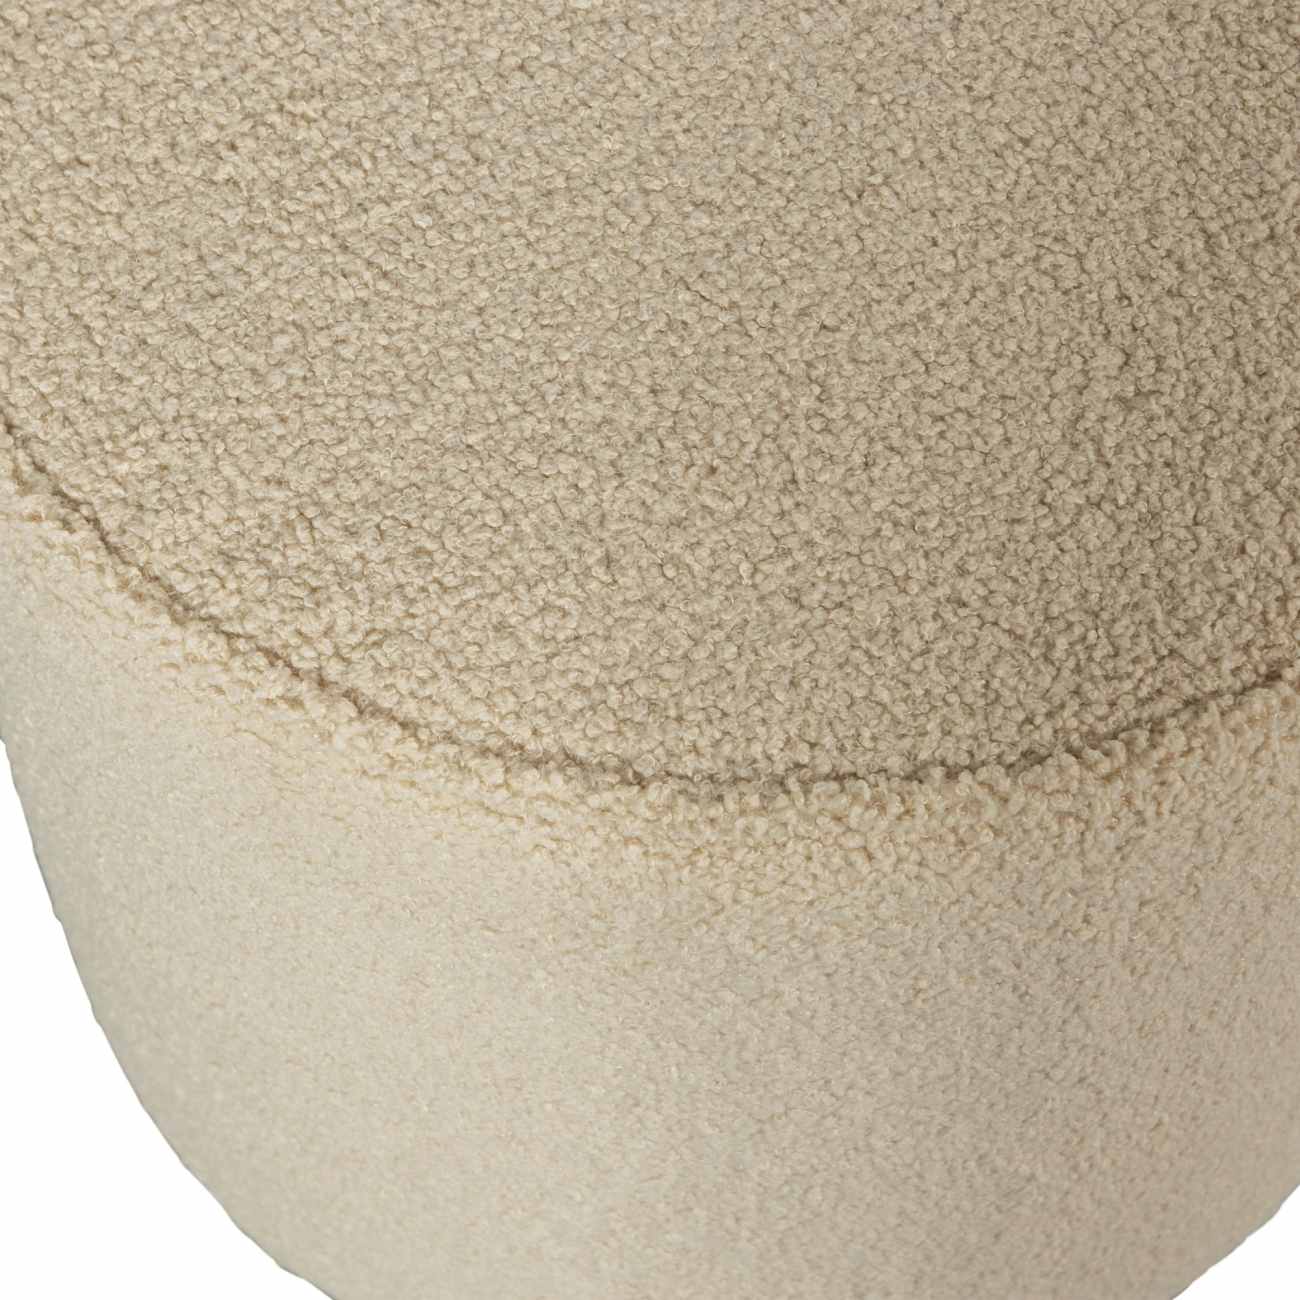 Hocker Sara aus Teddystoff Sand, Ø 46 cm